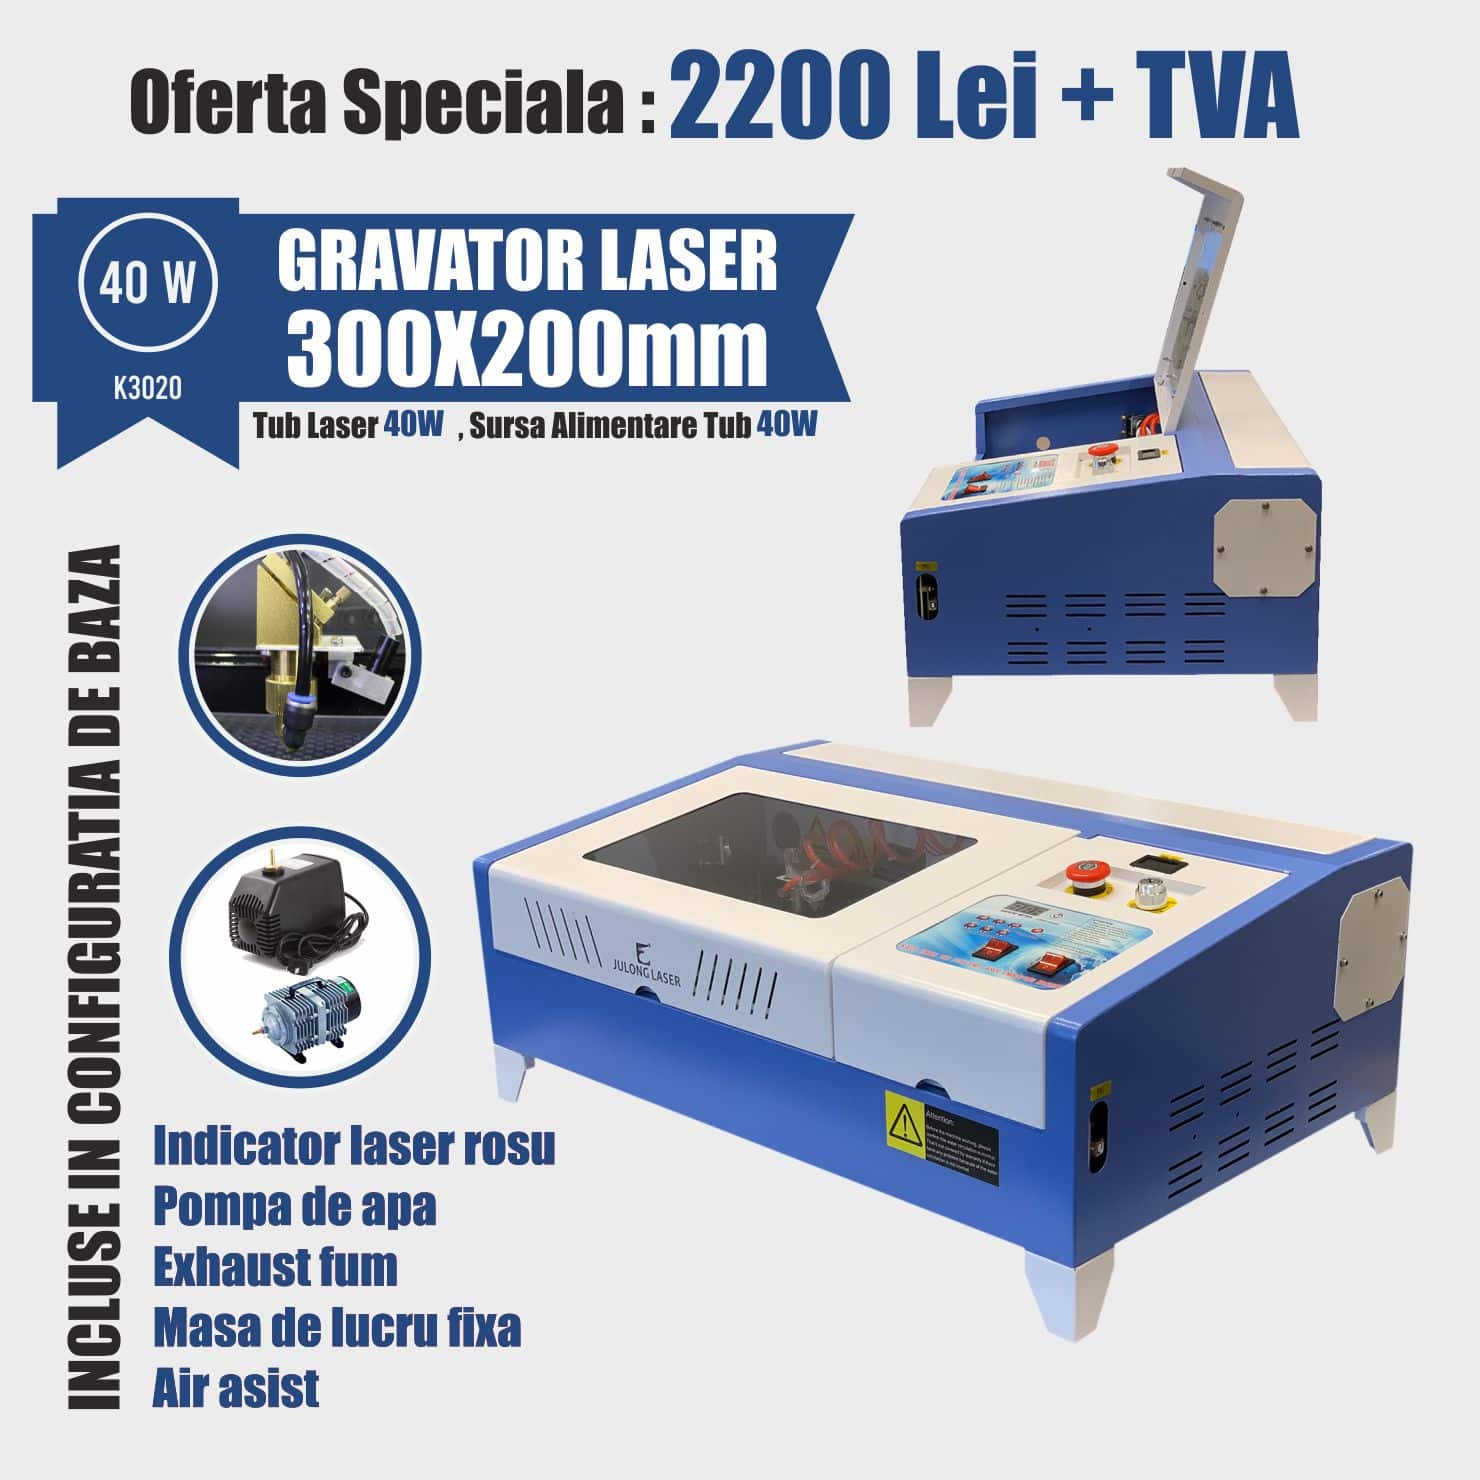 Gravator laser K3020 – 40w - Europaper Brasov - Utilaje Finisare Print